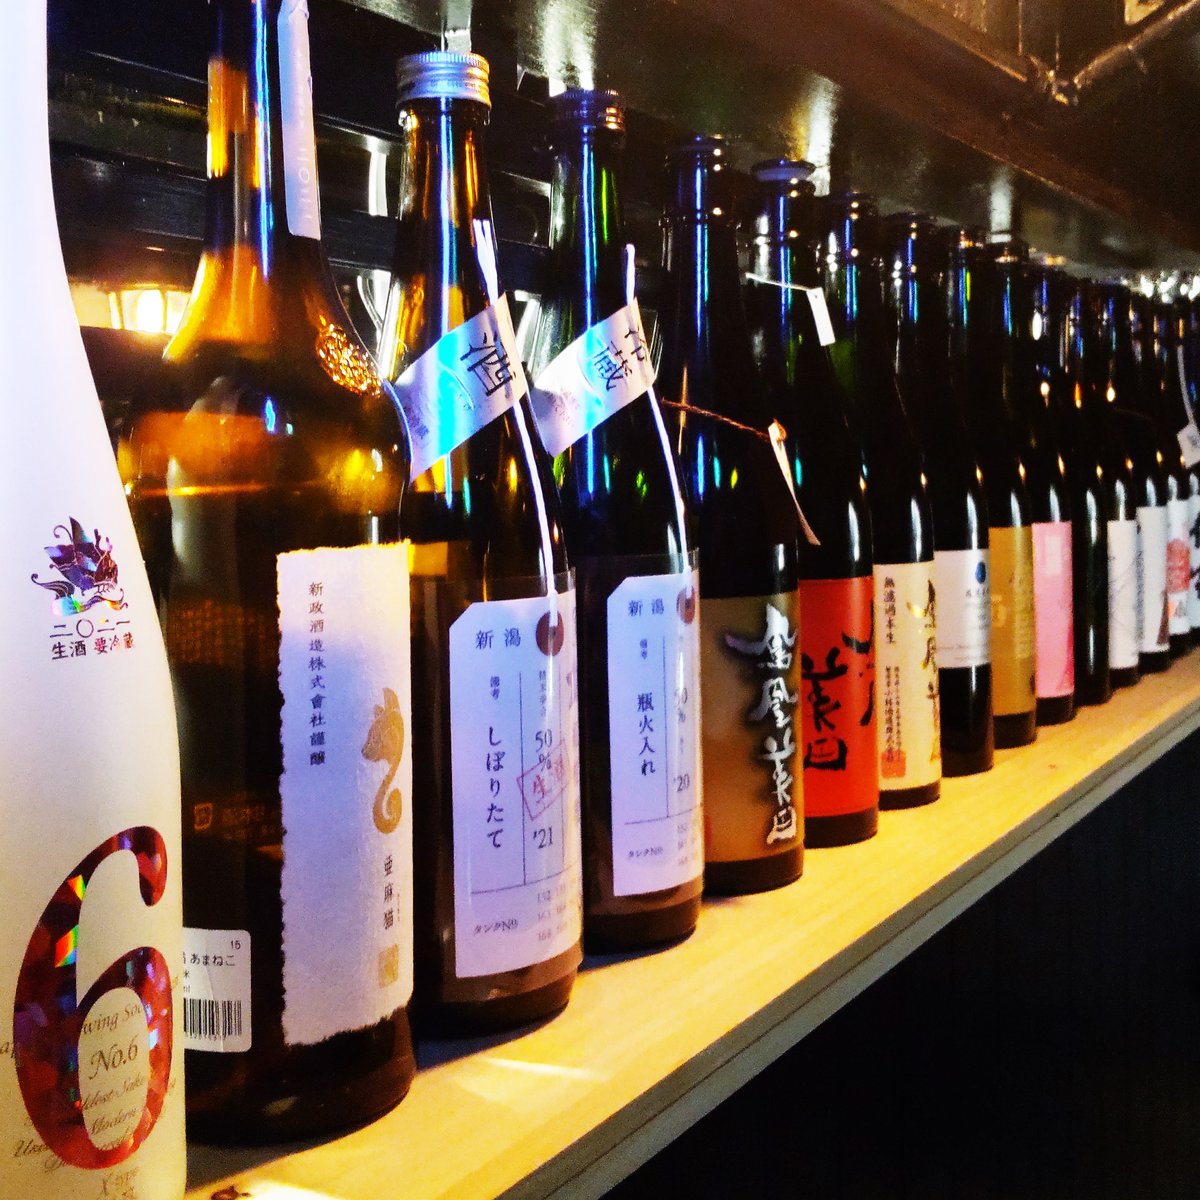 test ツイッターメディア - 店舗入り口に棚を増設して日本酒を並べました。

空き瓶をディスプレイに活かす。これこそがSDGsです（絶対違う）

 #日本酒初心者 #日本酒バー #サケシケン #雰囲気のいいバー #すすきのバー #日本酒が飲める店 #二次会バー #希少酒 #新政 #フルーティー #二次会 https://t.co/RwTUiikOtj